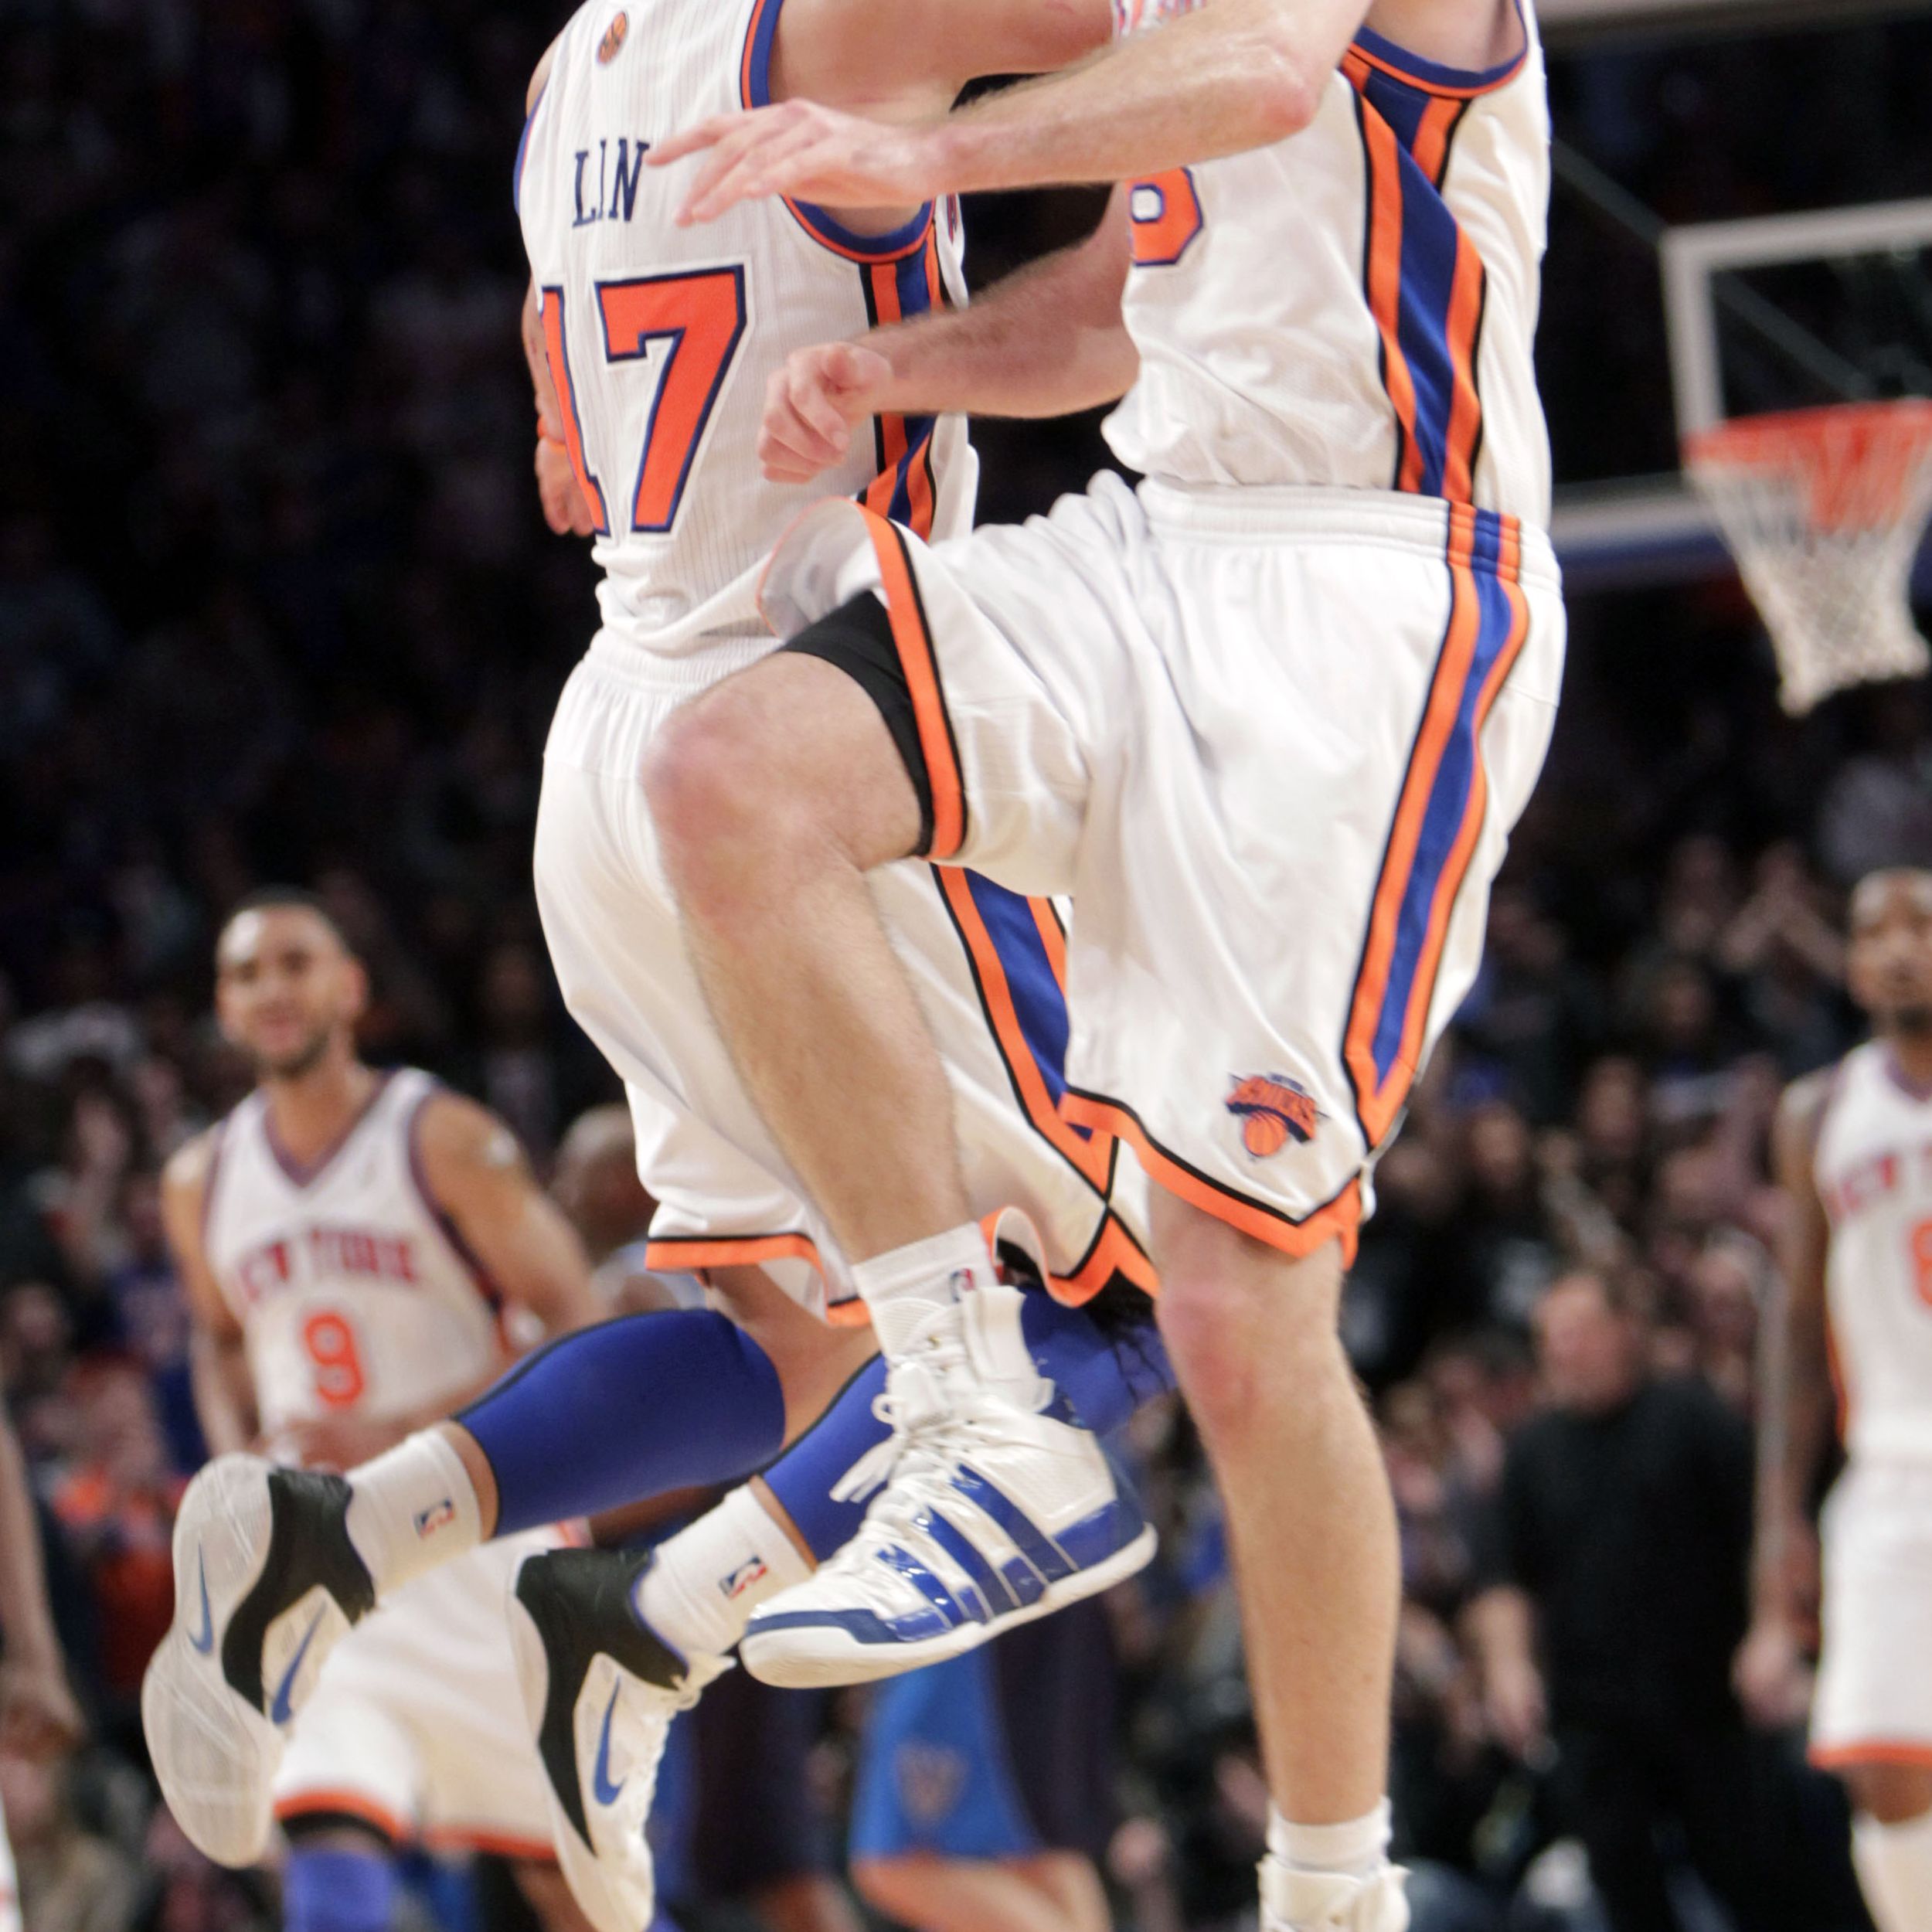 This week in Knicks history: Steve Novak scores career-high 25